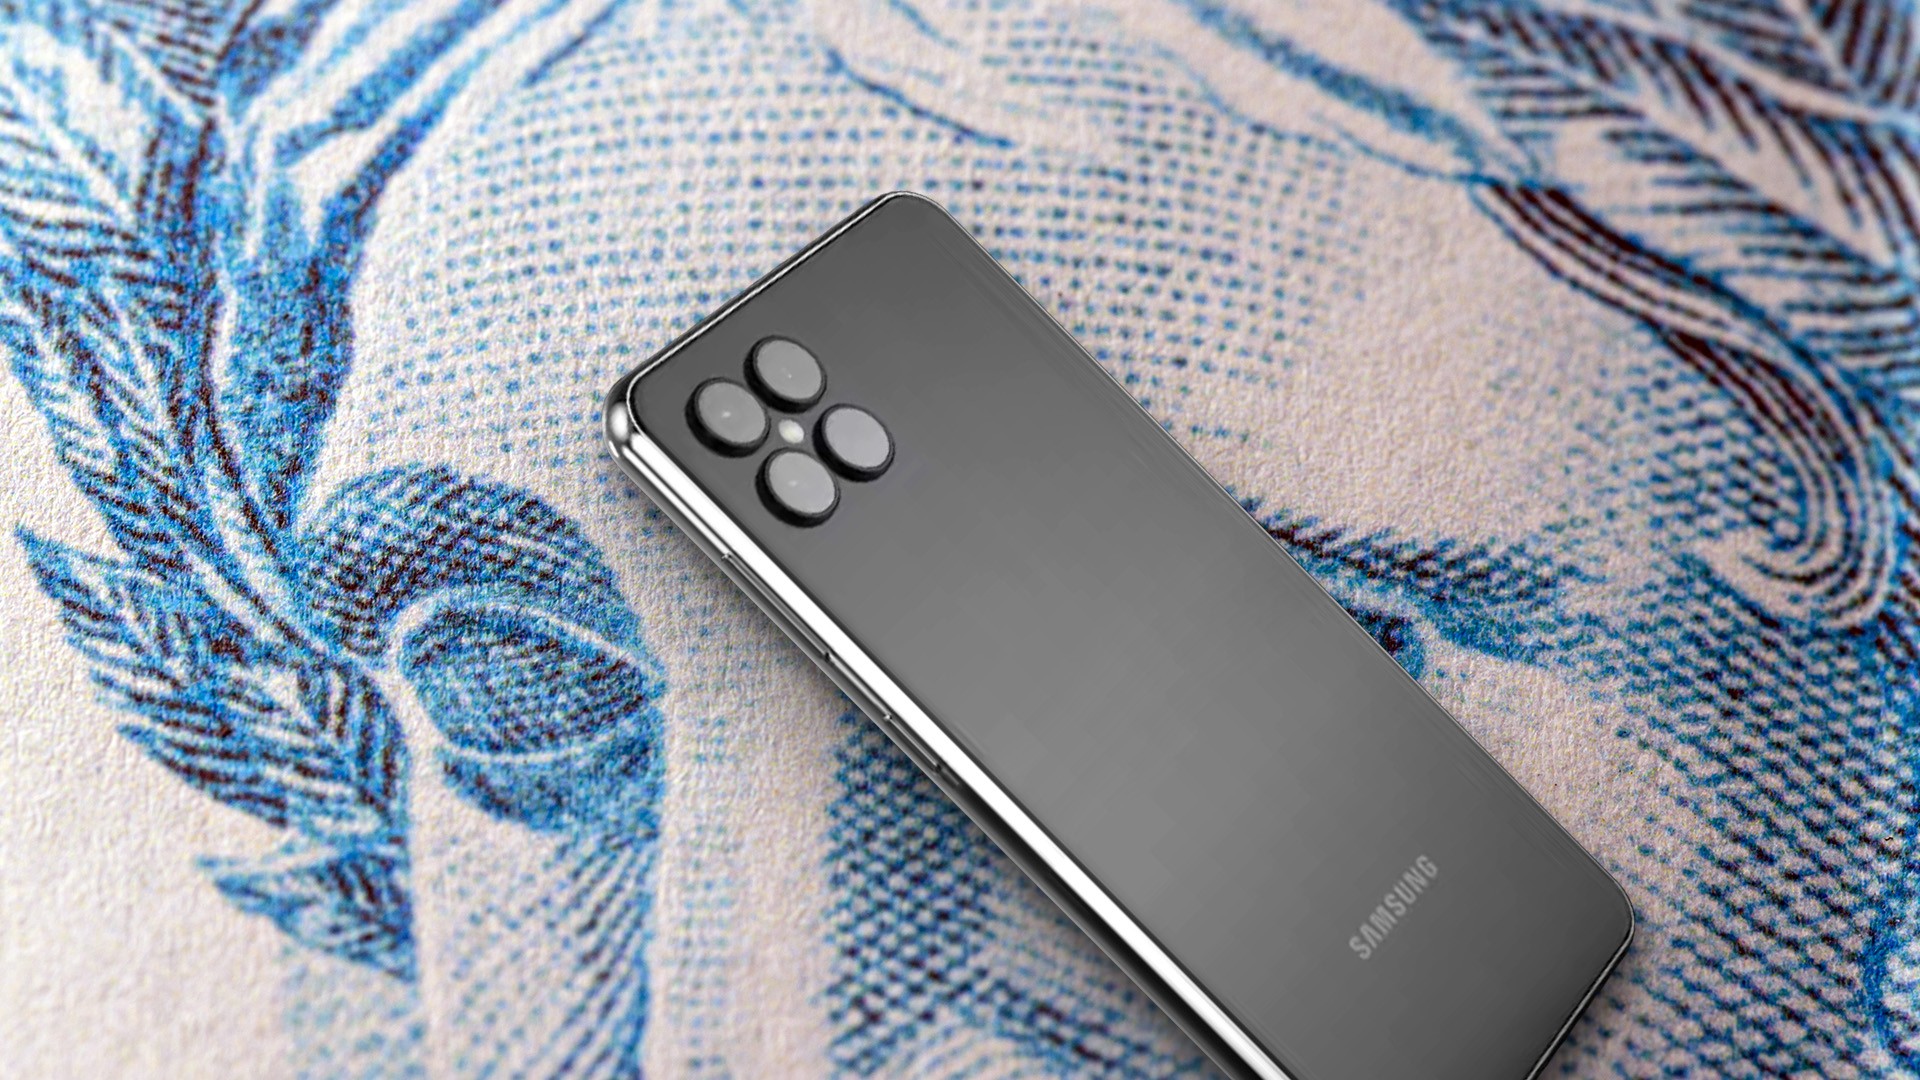 Samsung Galaxy S21 128GB 5G Cinza Outlet - Trocafone